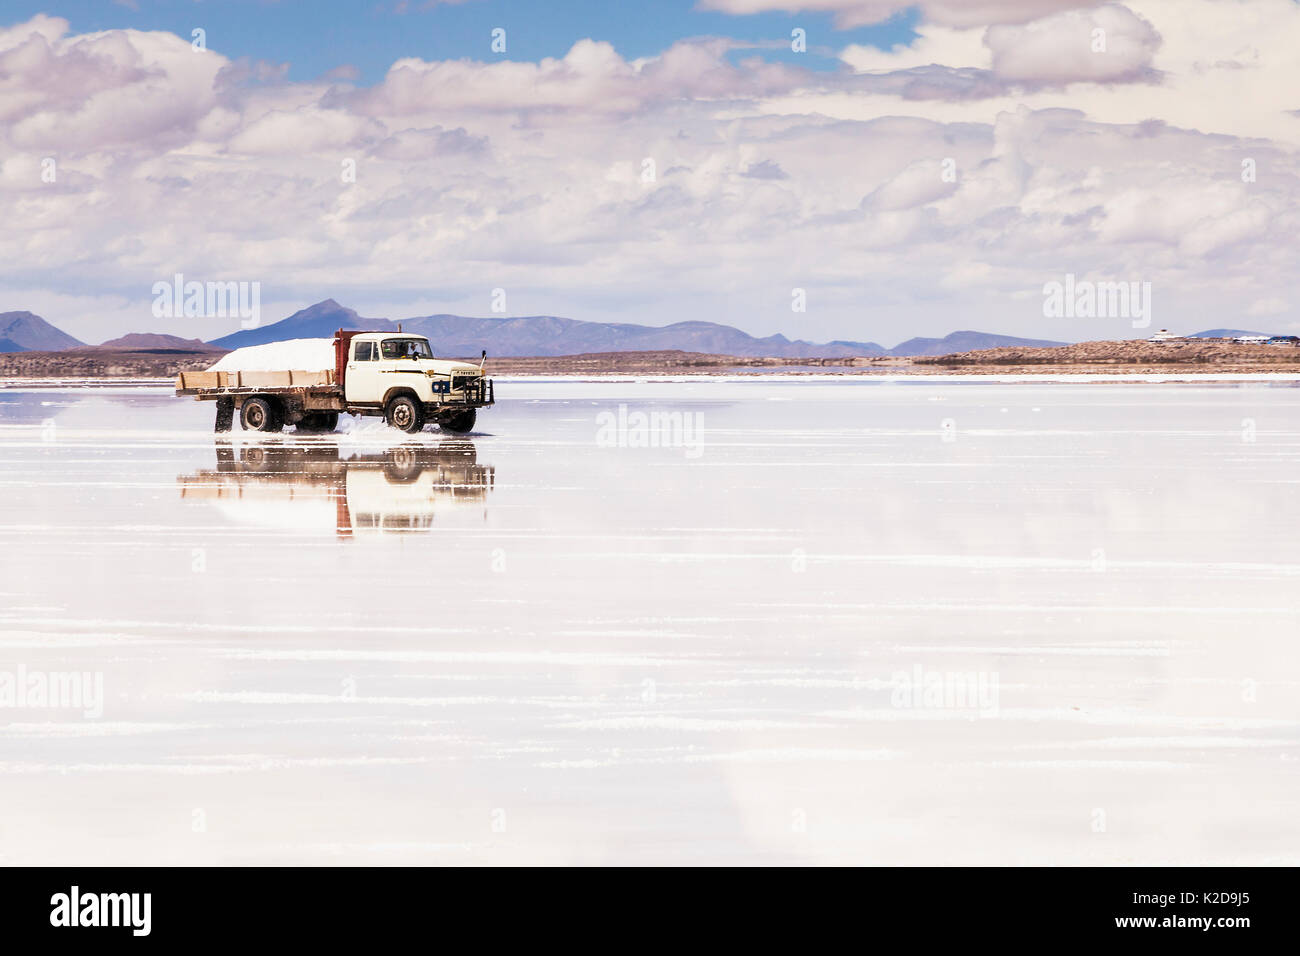 La récolte du sel sur Salar de Uyuni, le désert d'Atacama, la Bolivie. Décembre 2013. Banque D'Images